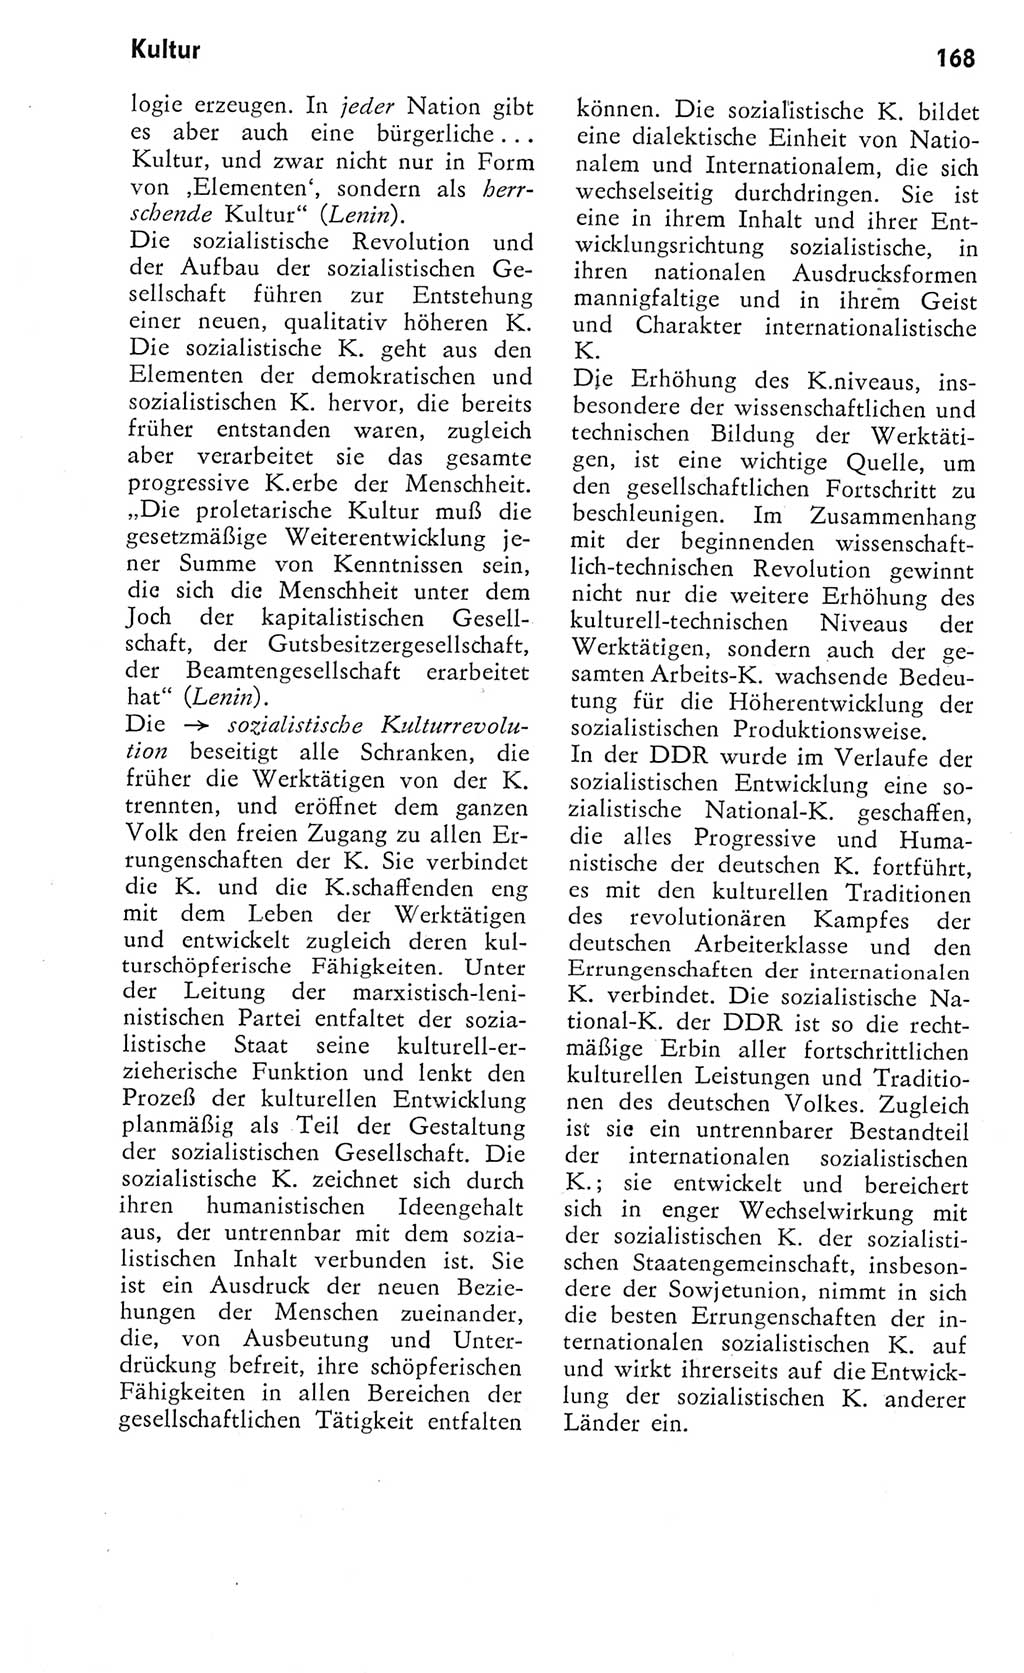 Kleines Wörterbuch der marxistisch-leninistischen Philosophie [Deutsche Demokratische Republik (DDR)] 1975, Seite 168 (Kl. Wb. ML Phil. DDR 1975, S. 168)